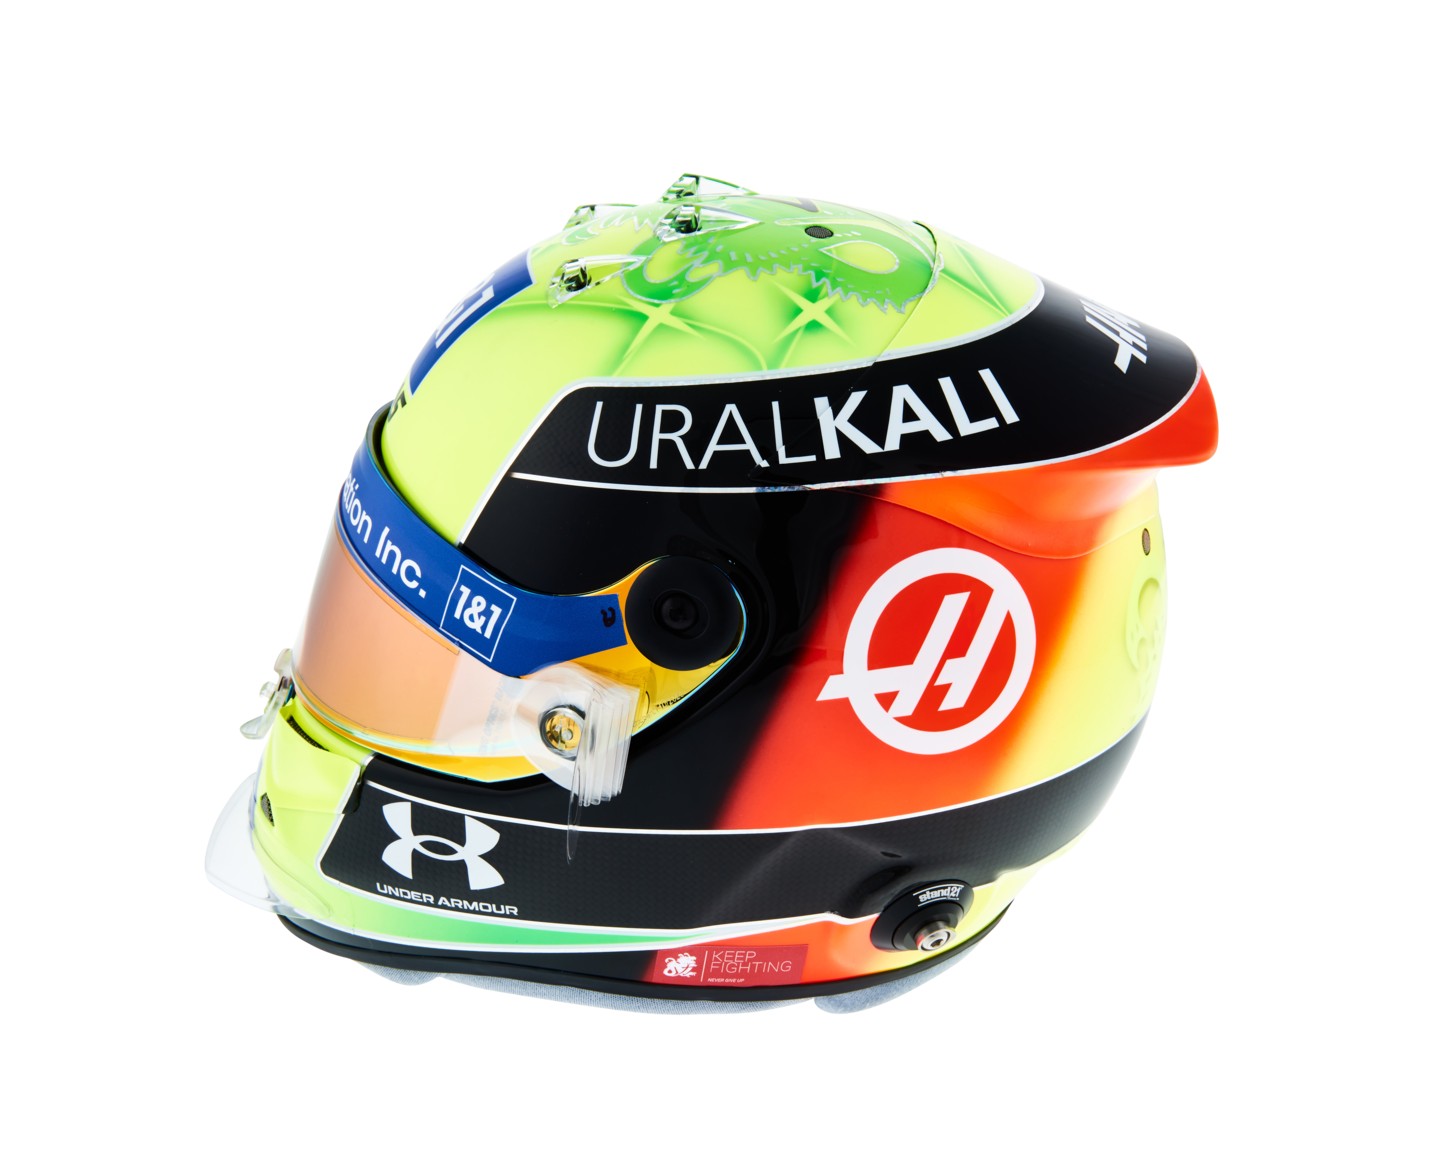 Mick Schumacher’s 2021 F1 helmet